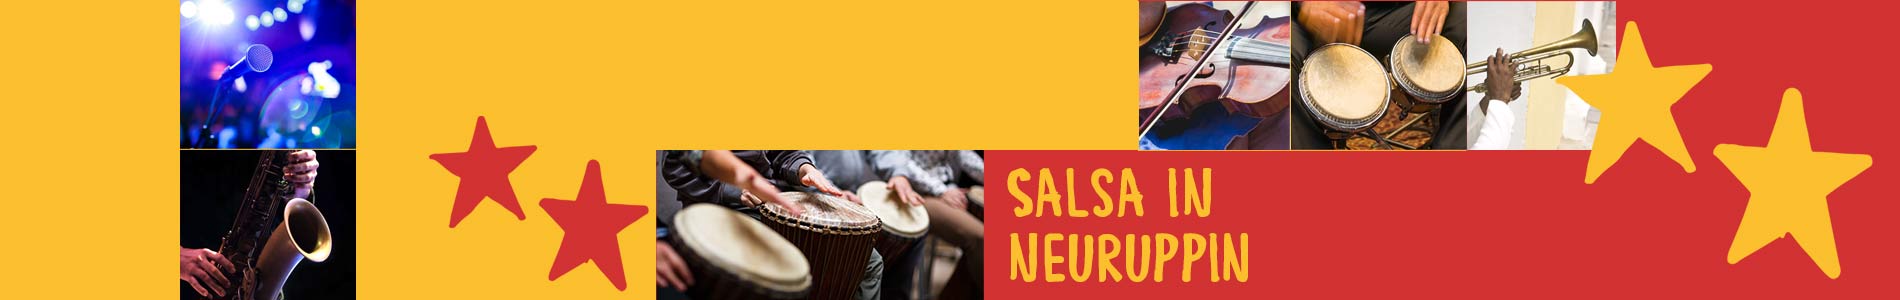 Salsa in Neuruppin – Salsa lernen und tanzen, Tanzkurse, Partys, Veranstaltungen